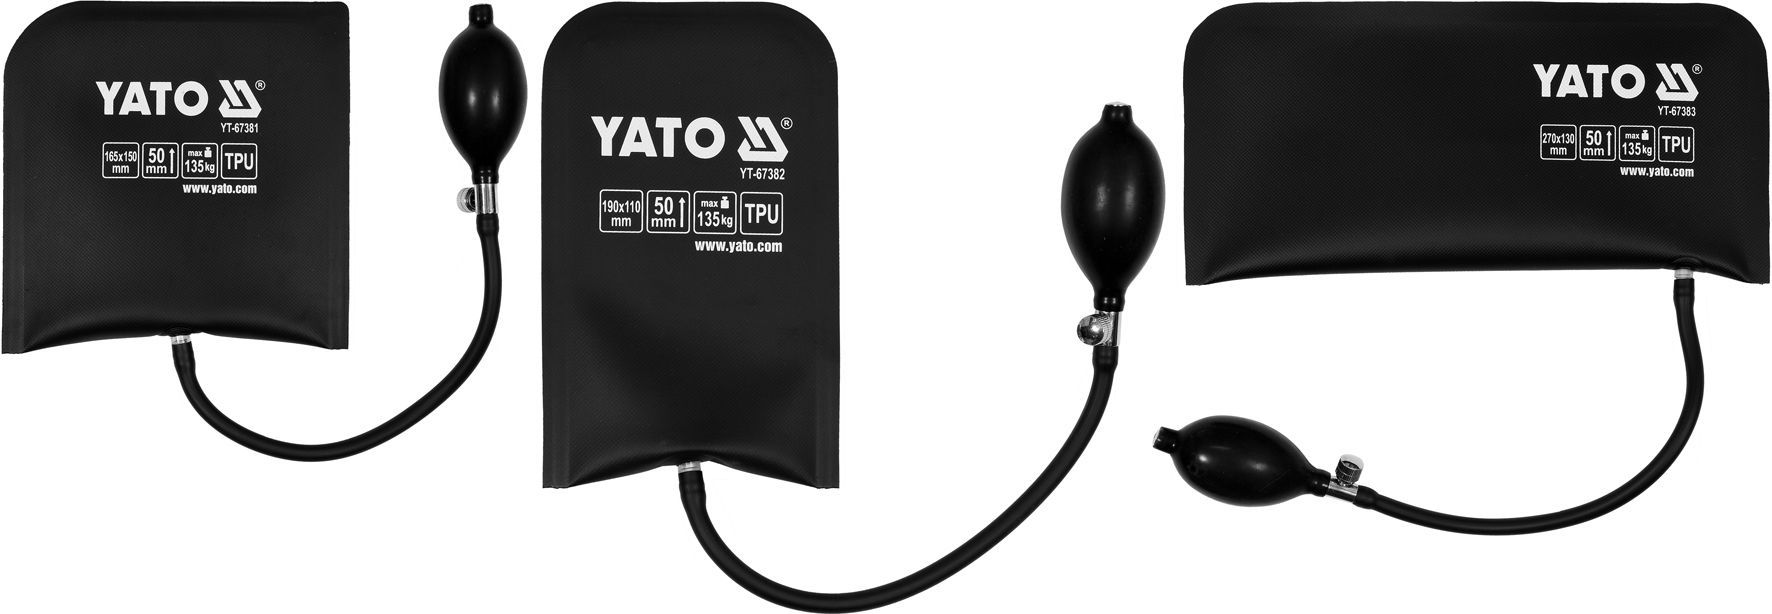 Подушки резиновые монтажные h50мм max 135кг. (набор 3шт.)  YATO YT-67385